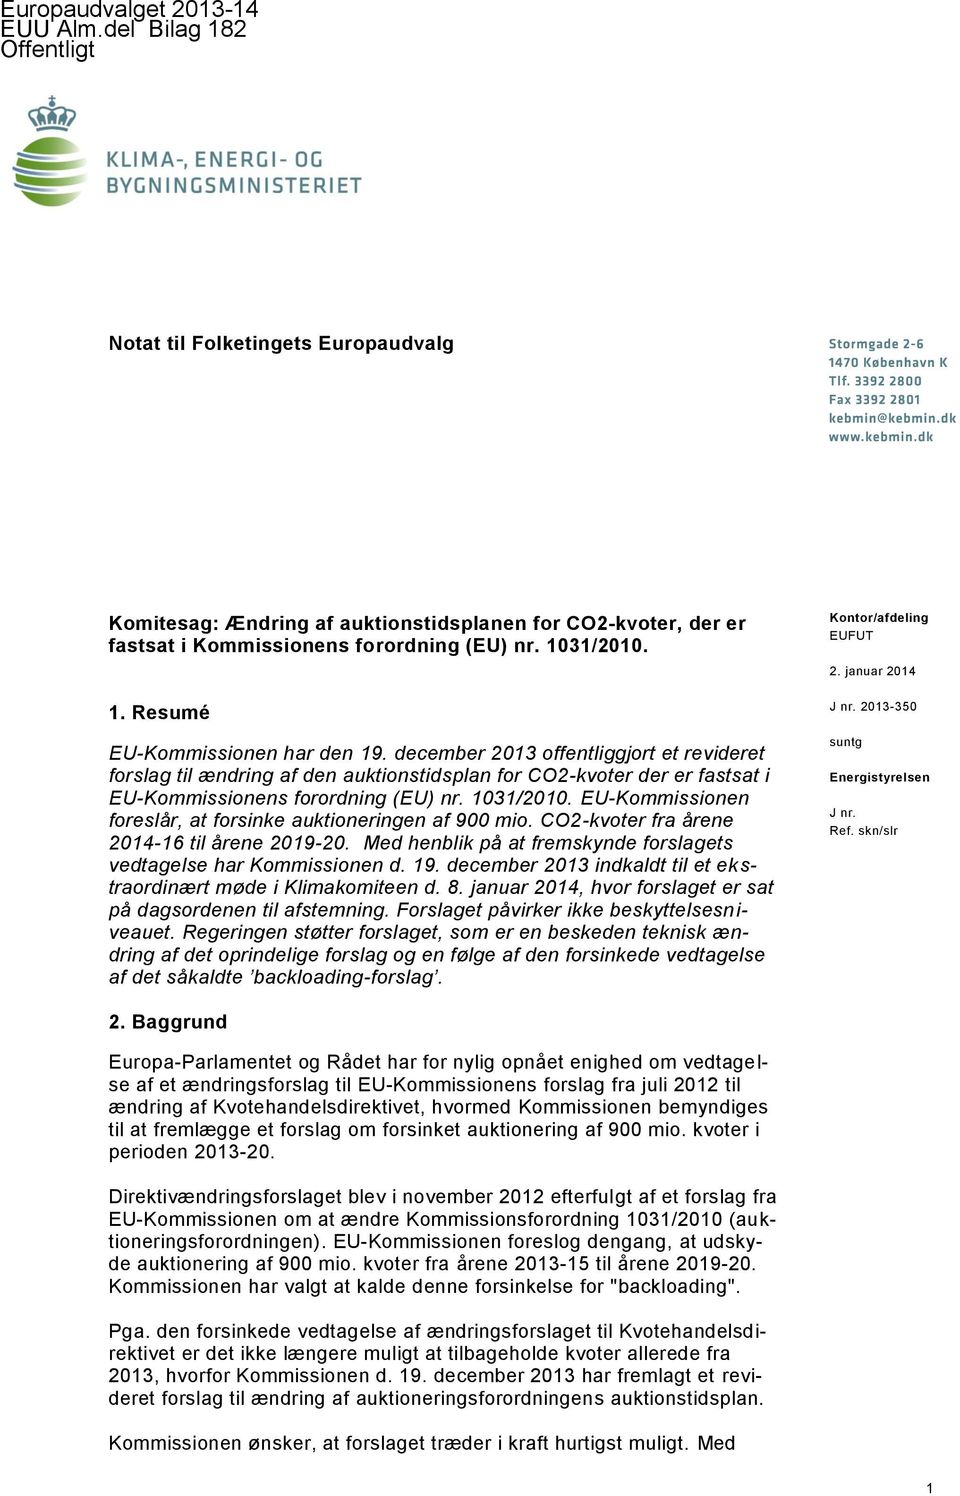 december 2013 offentliggjort et revideret forslag til ændring af den auktionstidsplan for CO2-kvoter der er fastsat i EU-Kommissionens forordning (EU) nr. 1031/2010.